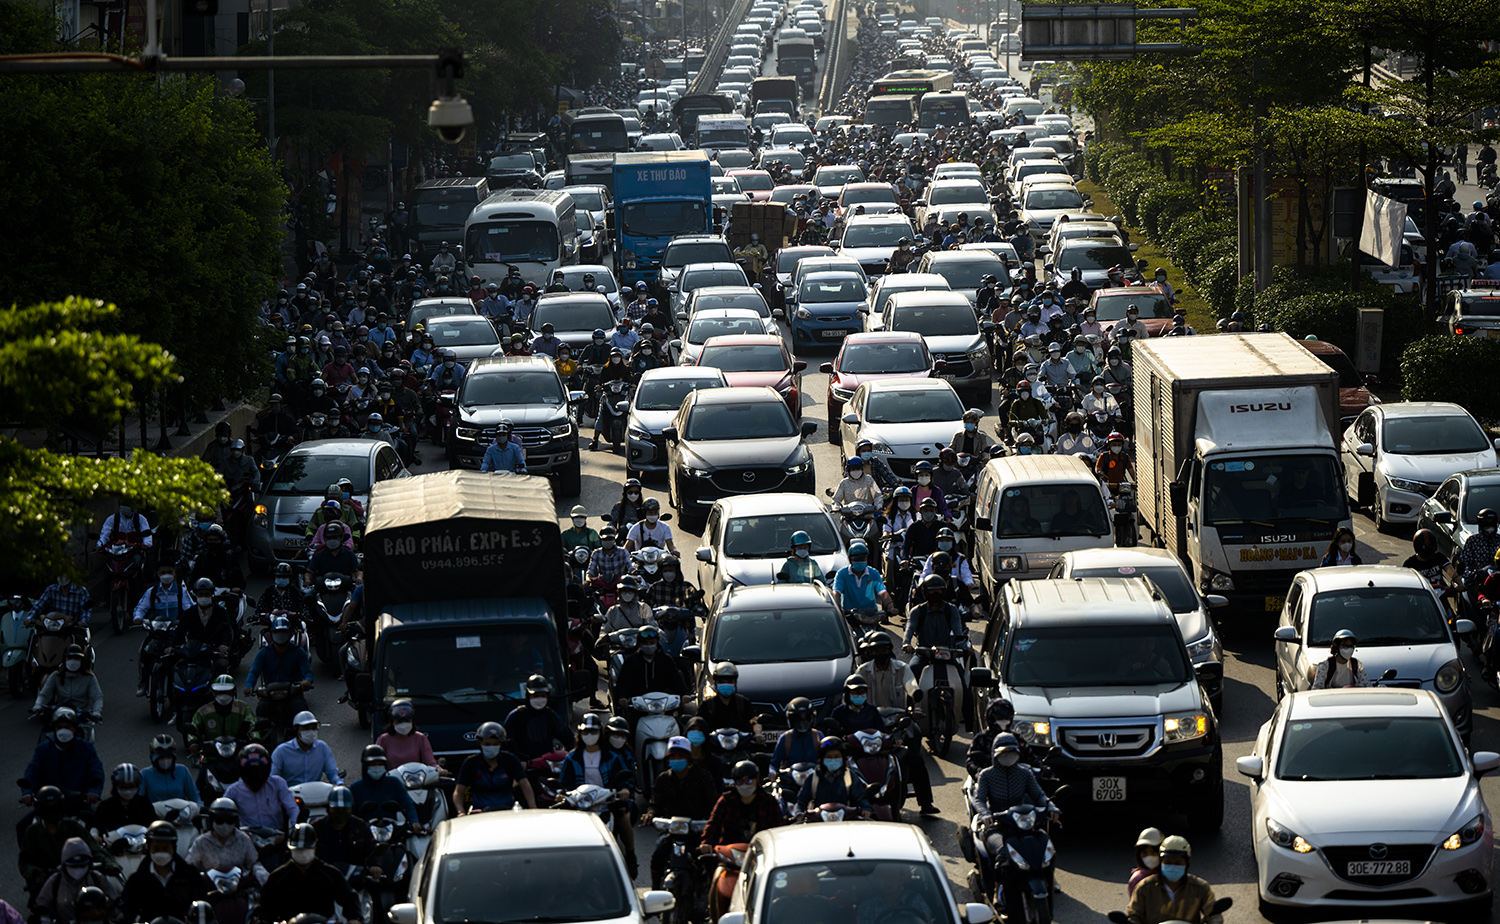 Hà Nội, TP.HCM lại tắc đường kinh hoàng sau nghỉ lễ, người dân chật vật tới nơi làm việc - 11